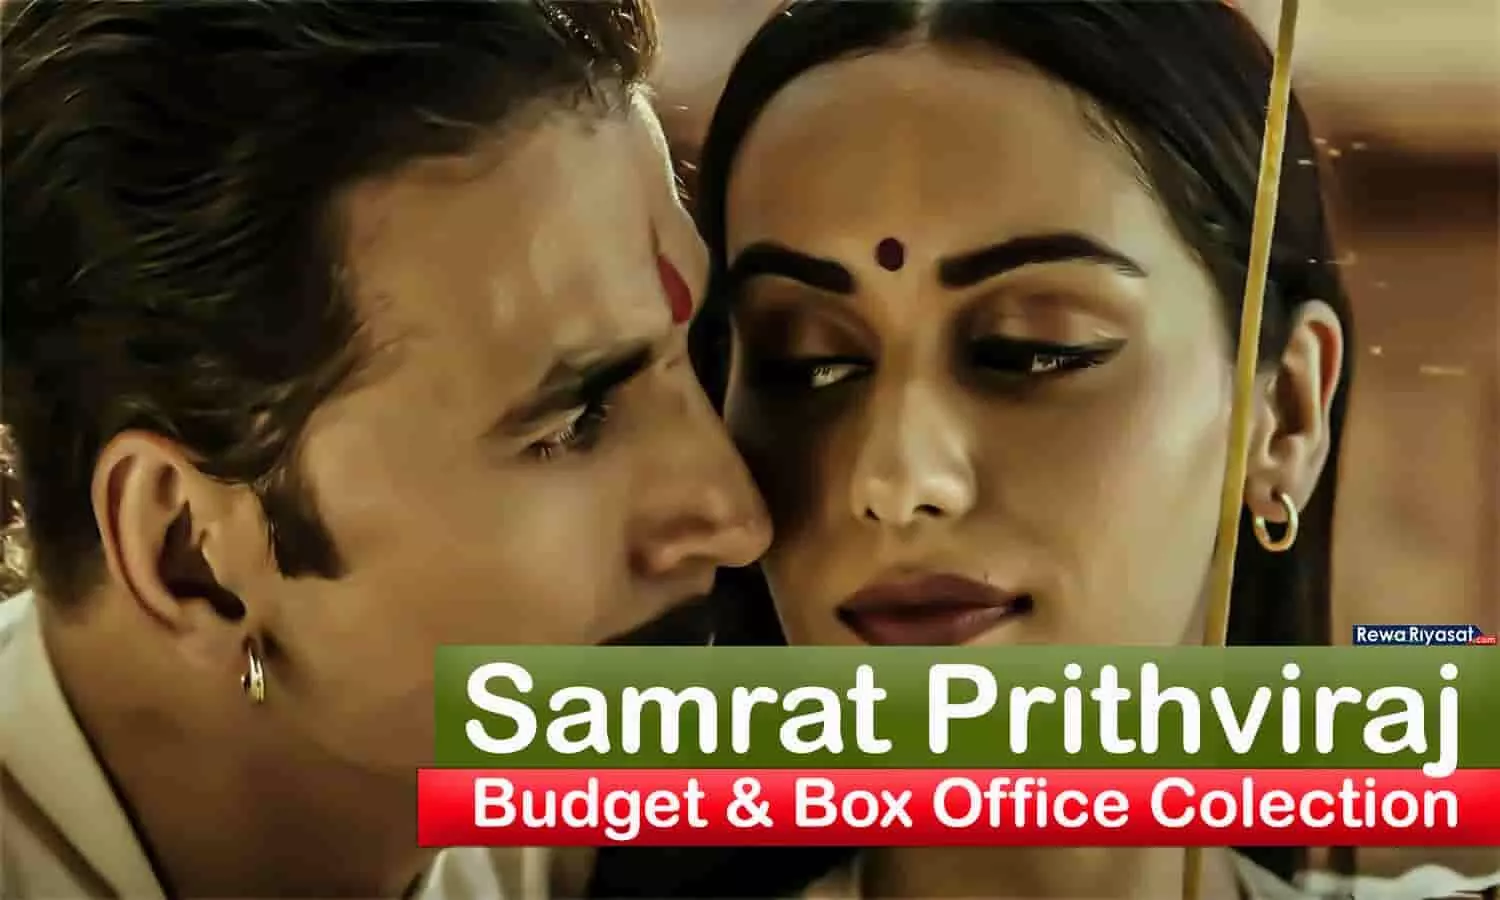 Bachchhan Paandey के बाद अक्षय कुमार की Samrat Prithviraj भी फ्लॉप होने के कगार पर, जानिए अब तक का Box Office Collection